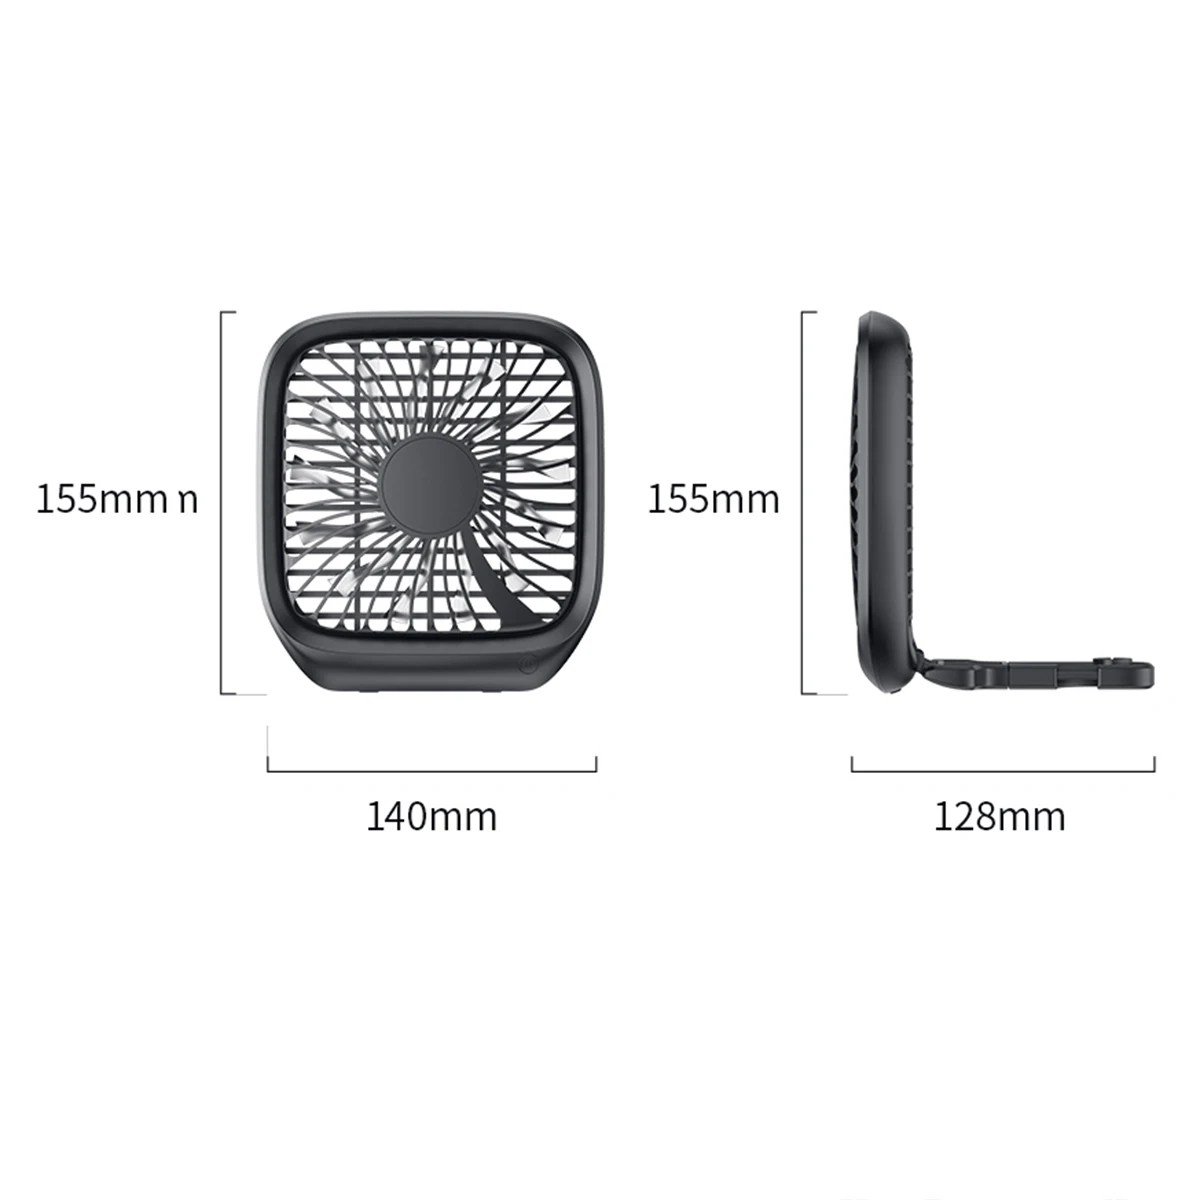 

Car Fan Cooler Foldable Silent Fan For Car Backseat Air Condition 3 Speed Adjustable Mini USB Fan Desk Fan Auto Cooling fans